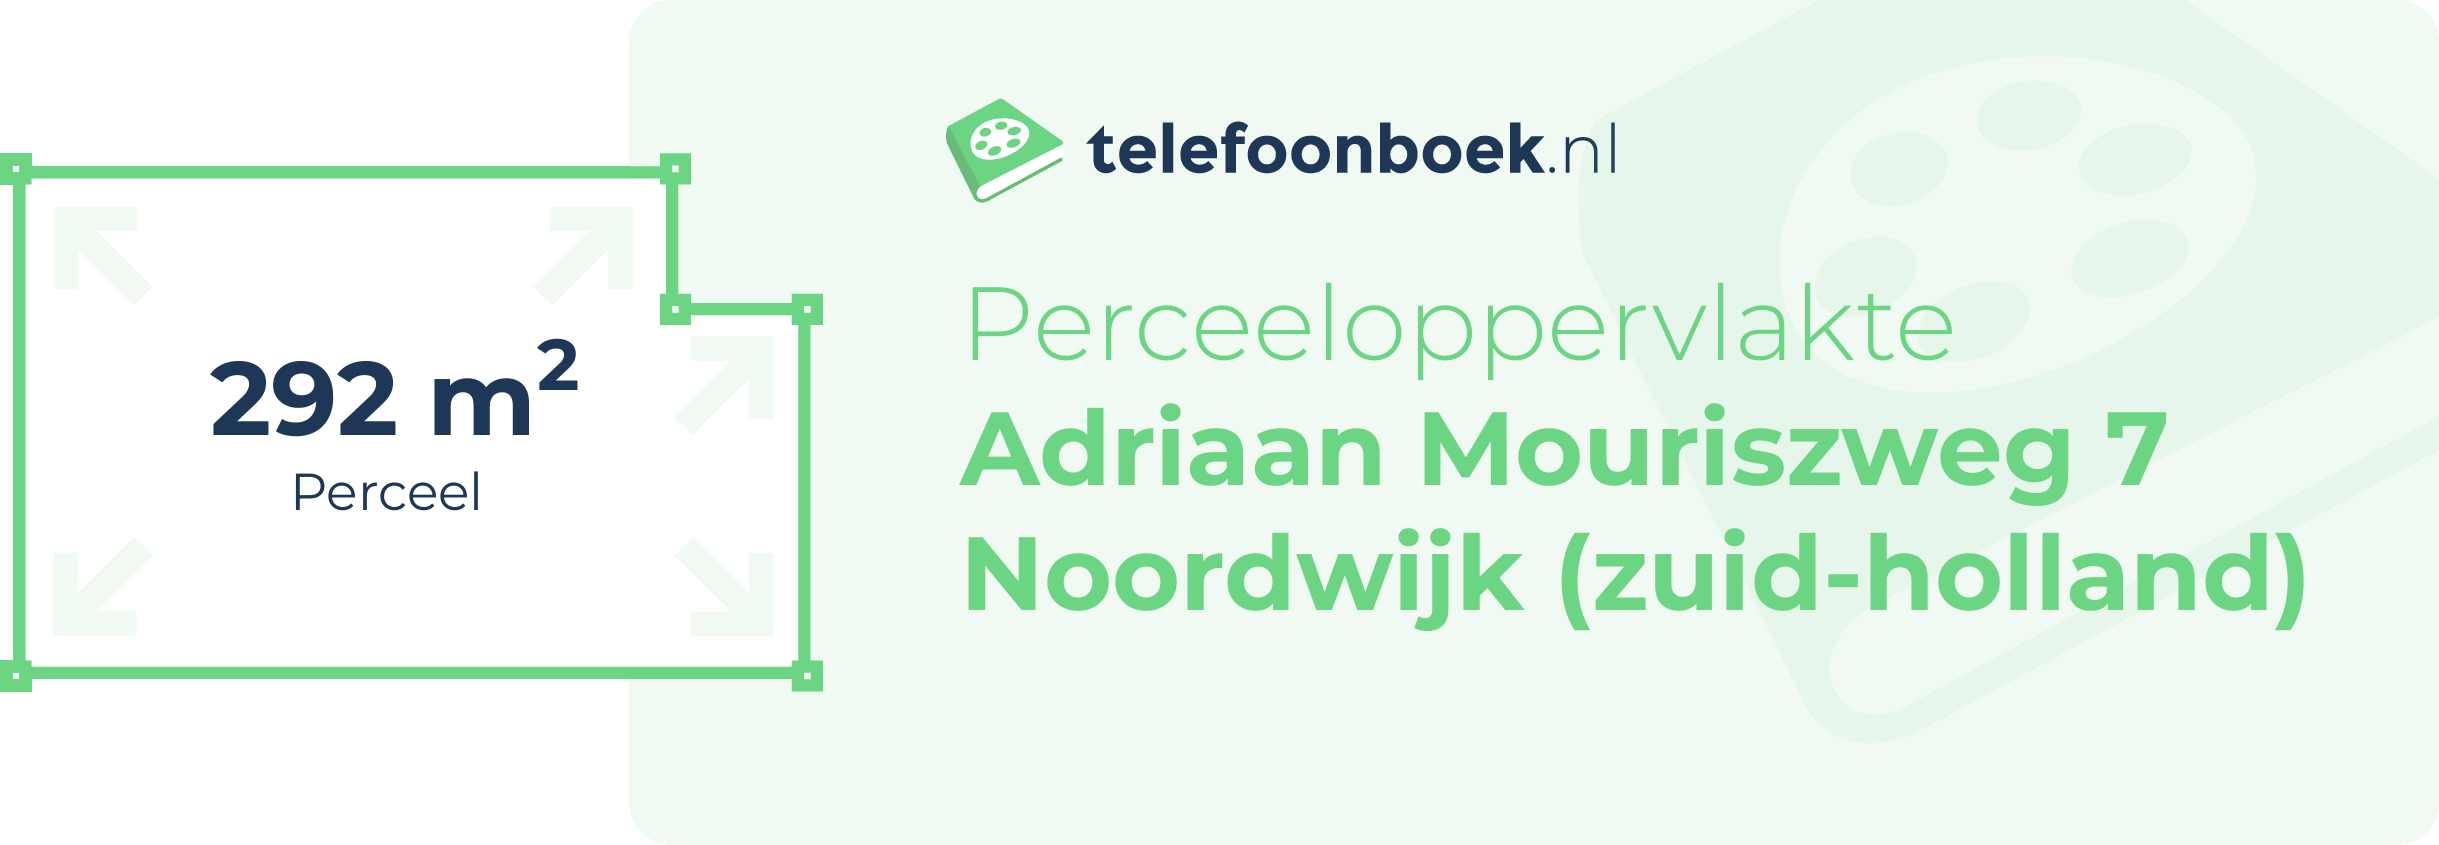 Perceeloppervlakte Adriaan Mouriszweg 7 Noordwijk (Zuid-Holland)